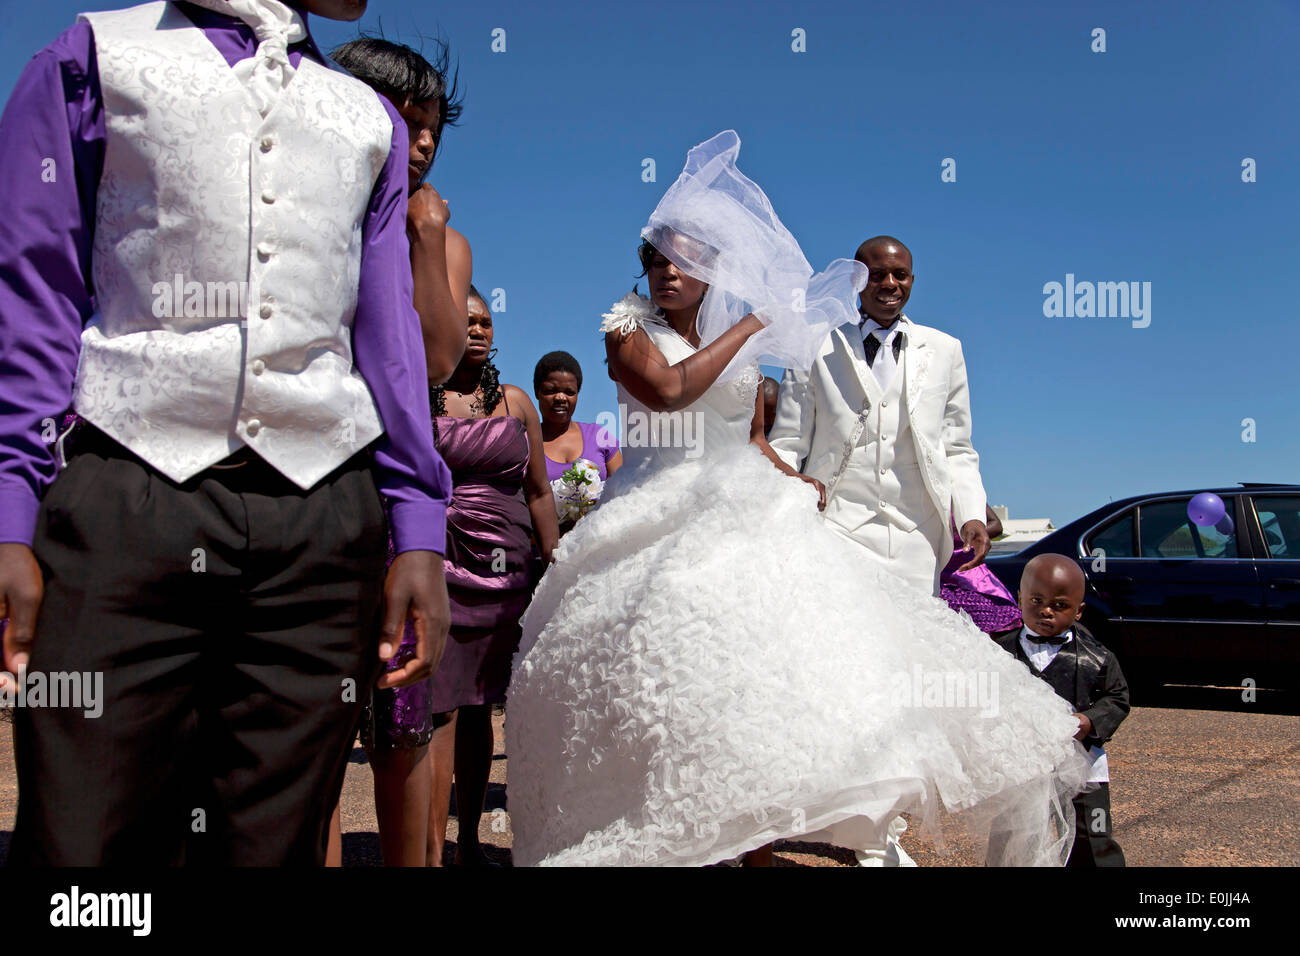 Mariage africain Banque de photographies et d'images à haute résolution -  Alamy